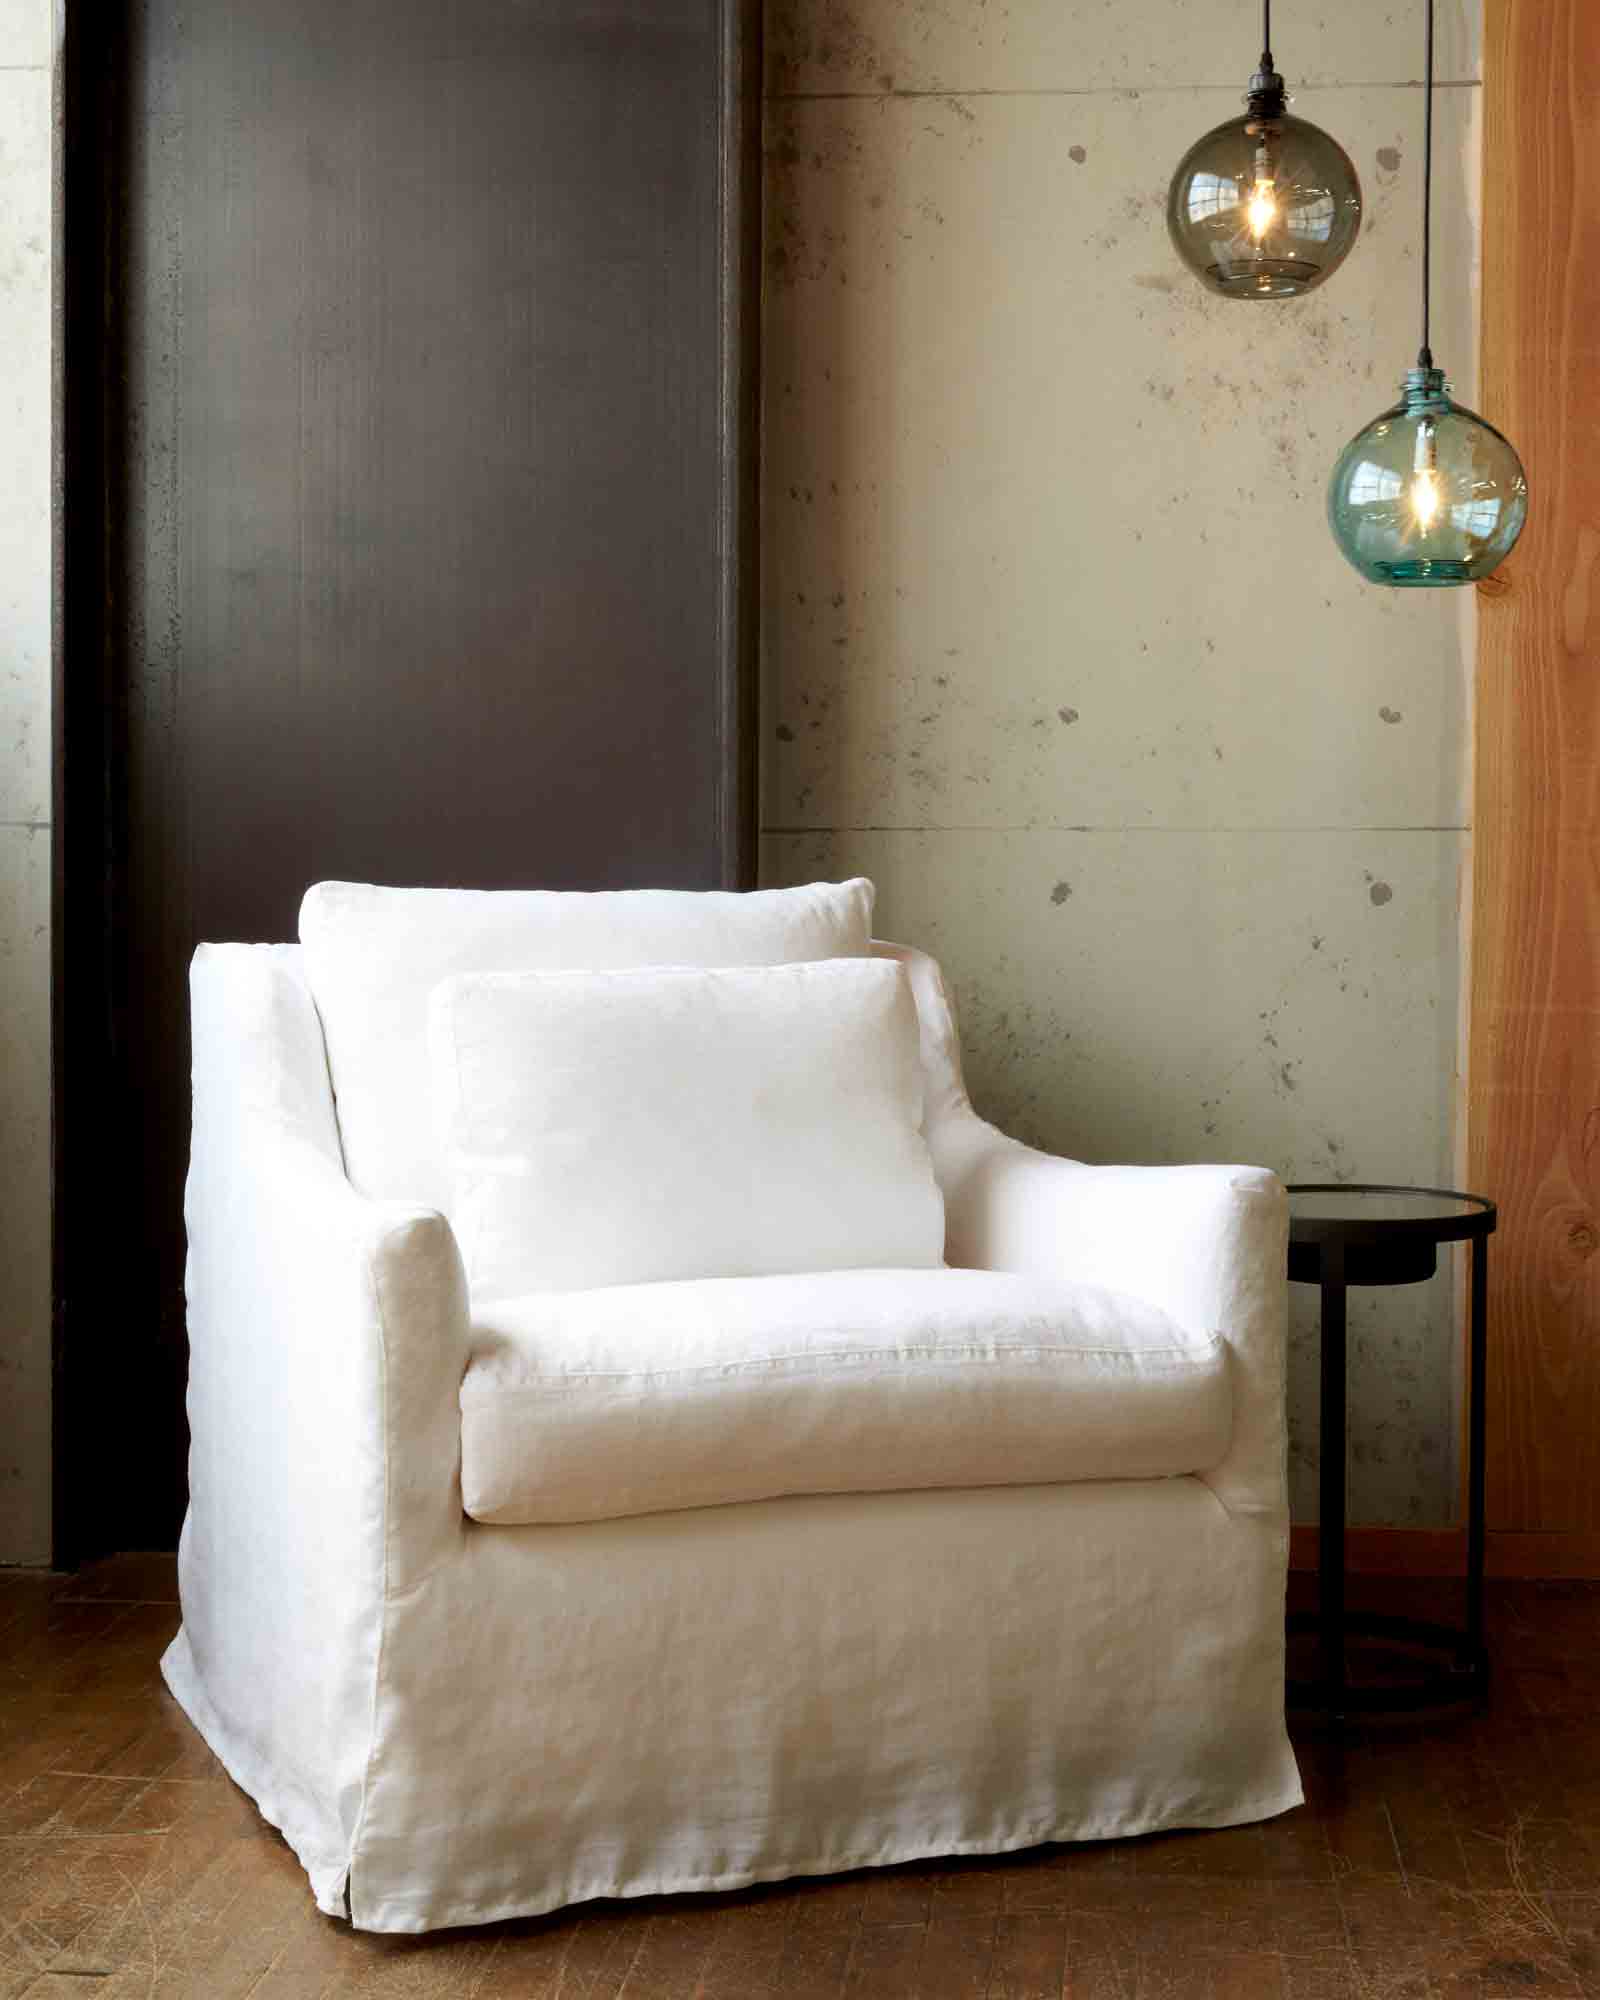  椅子在奥的斯怀特旁边的金属边桌. 背景是一面白色的墙，墙上挂着两盏水罐灯. 